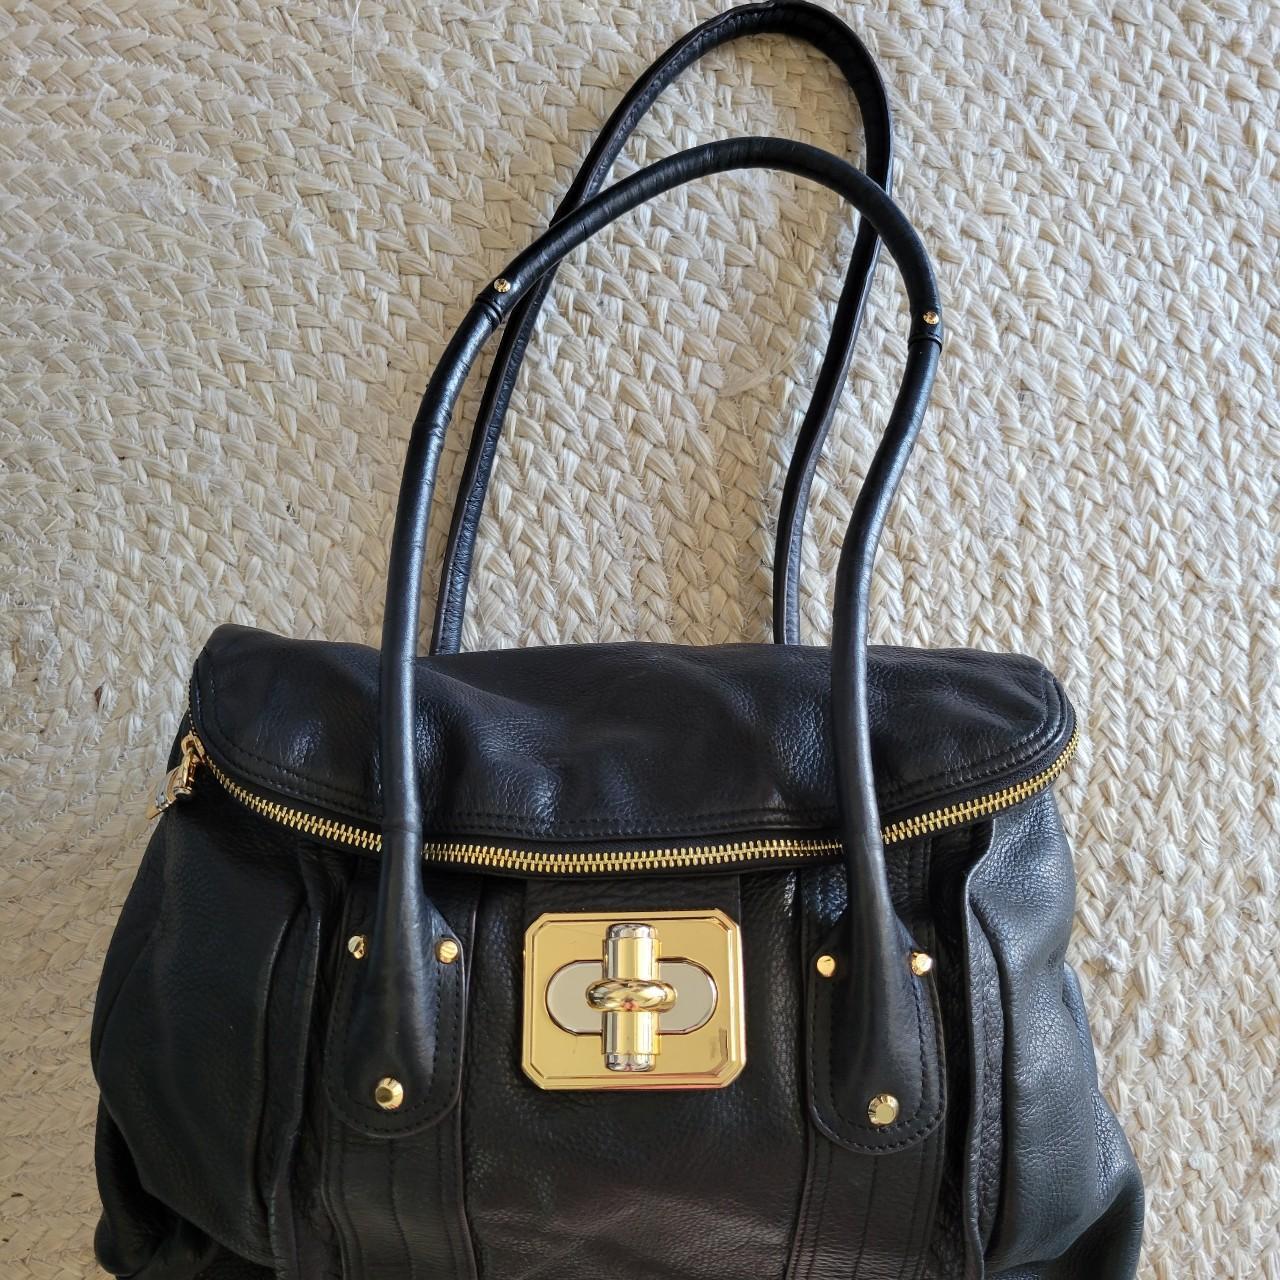 Vintage B MAKOWSKY shoulder bag / hobo purse. Off... - Depop